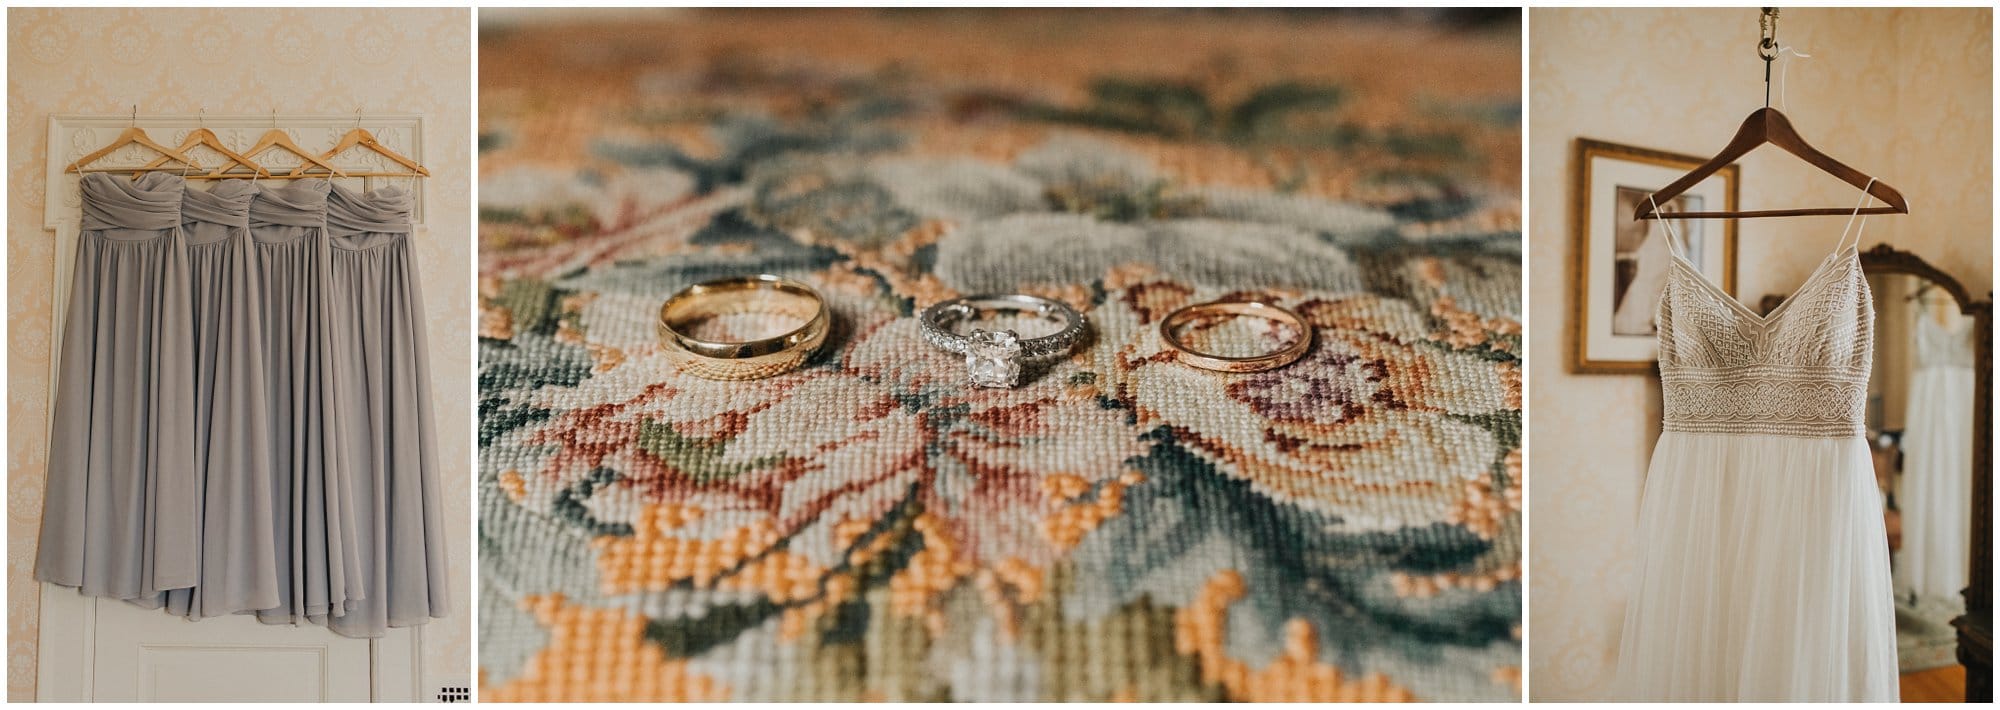 vintage wedding dress, vintage wedding rings